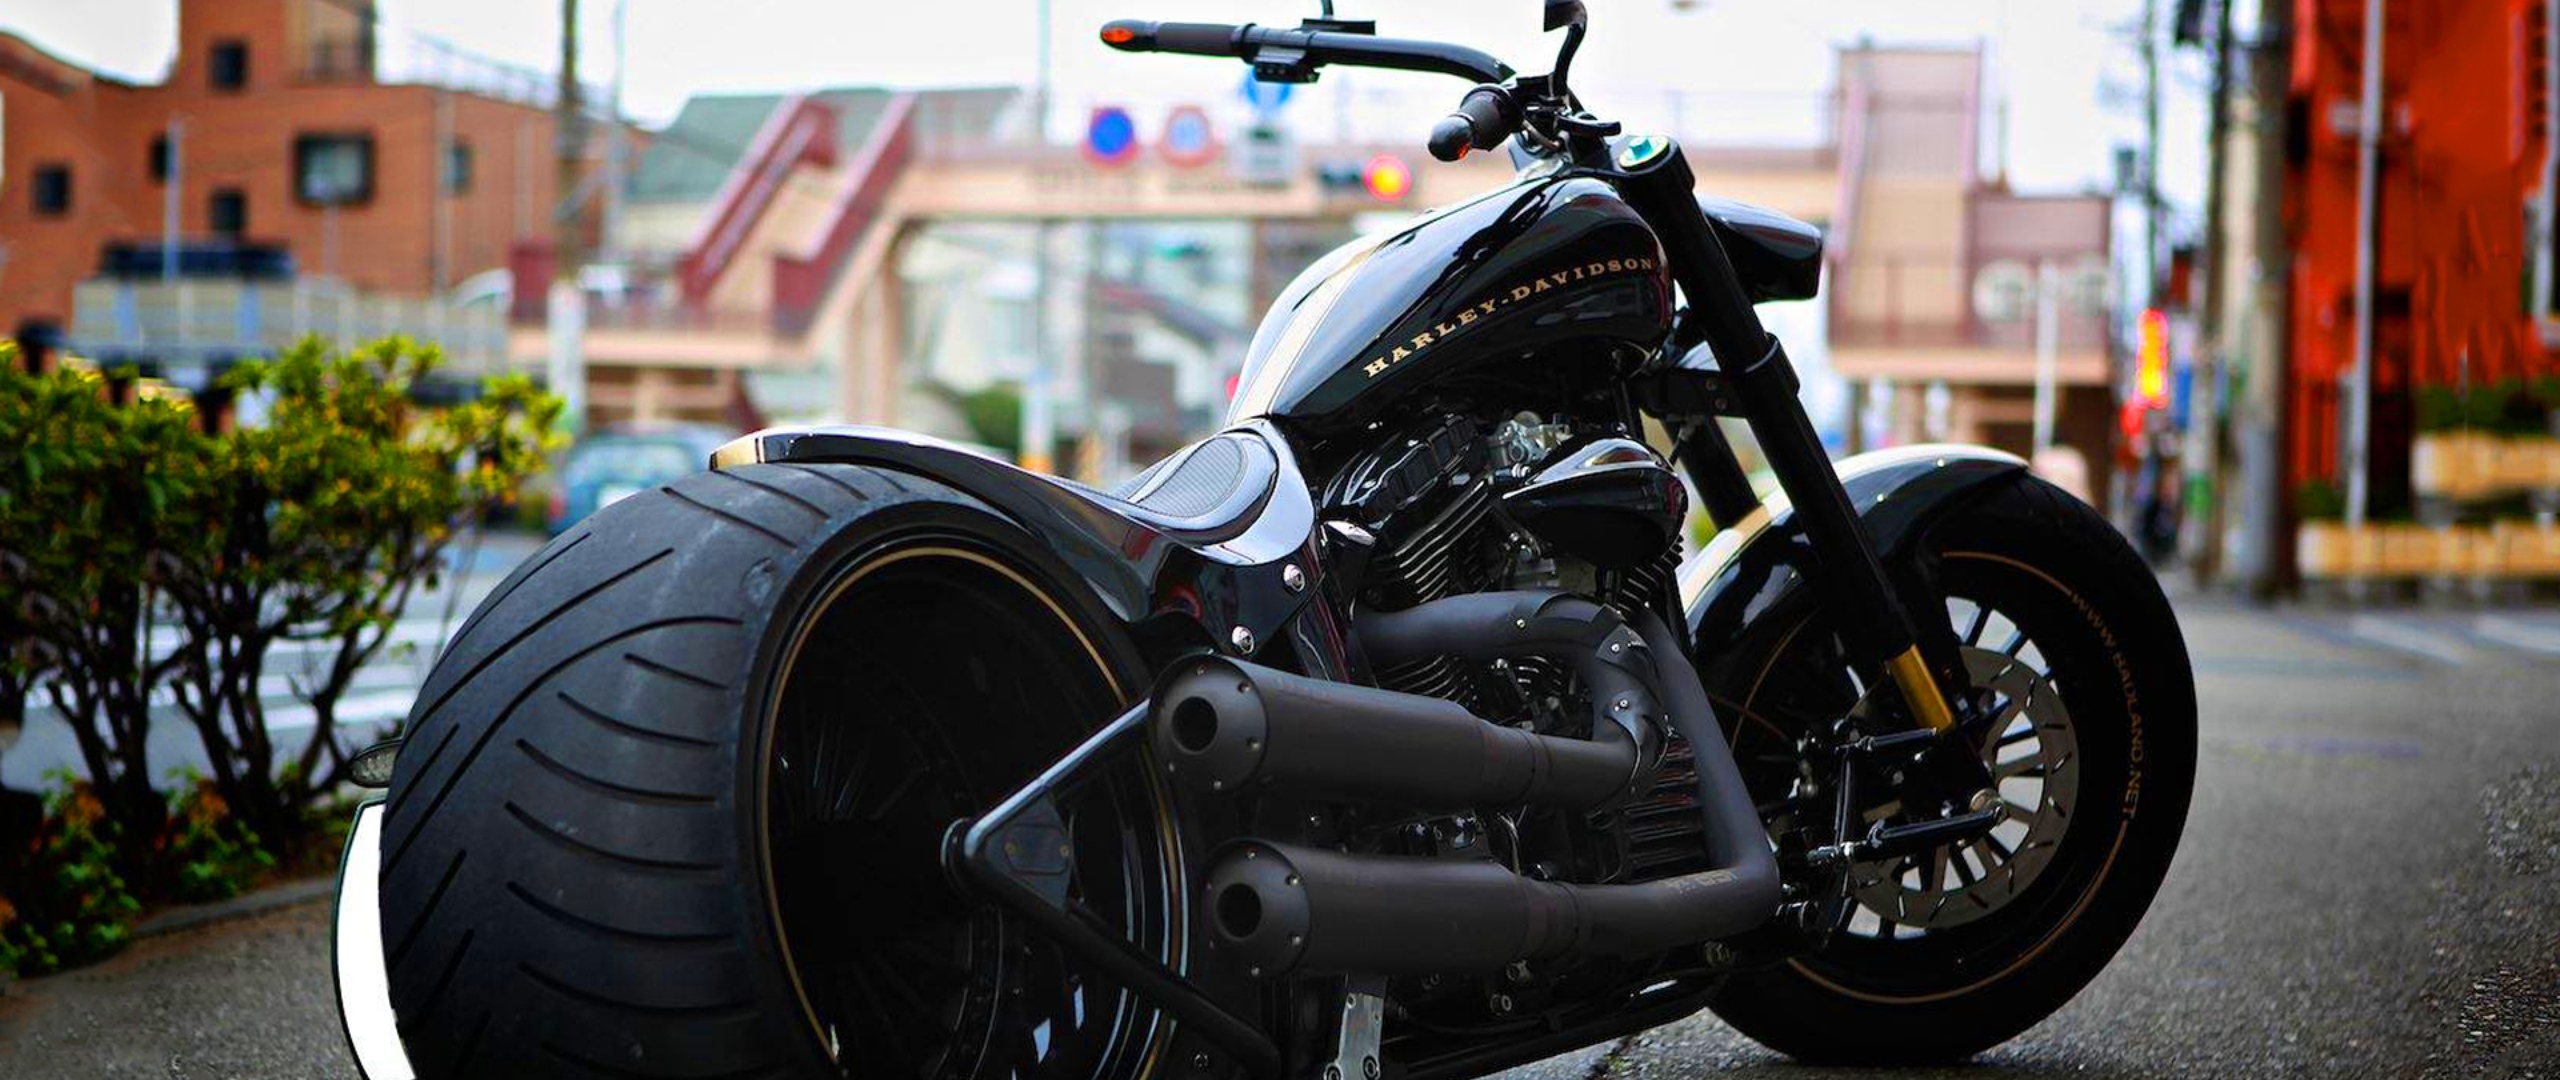 Harley davidson bike motorcycle без смс